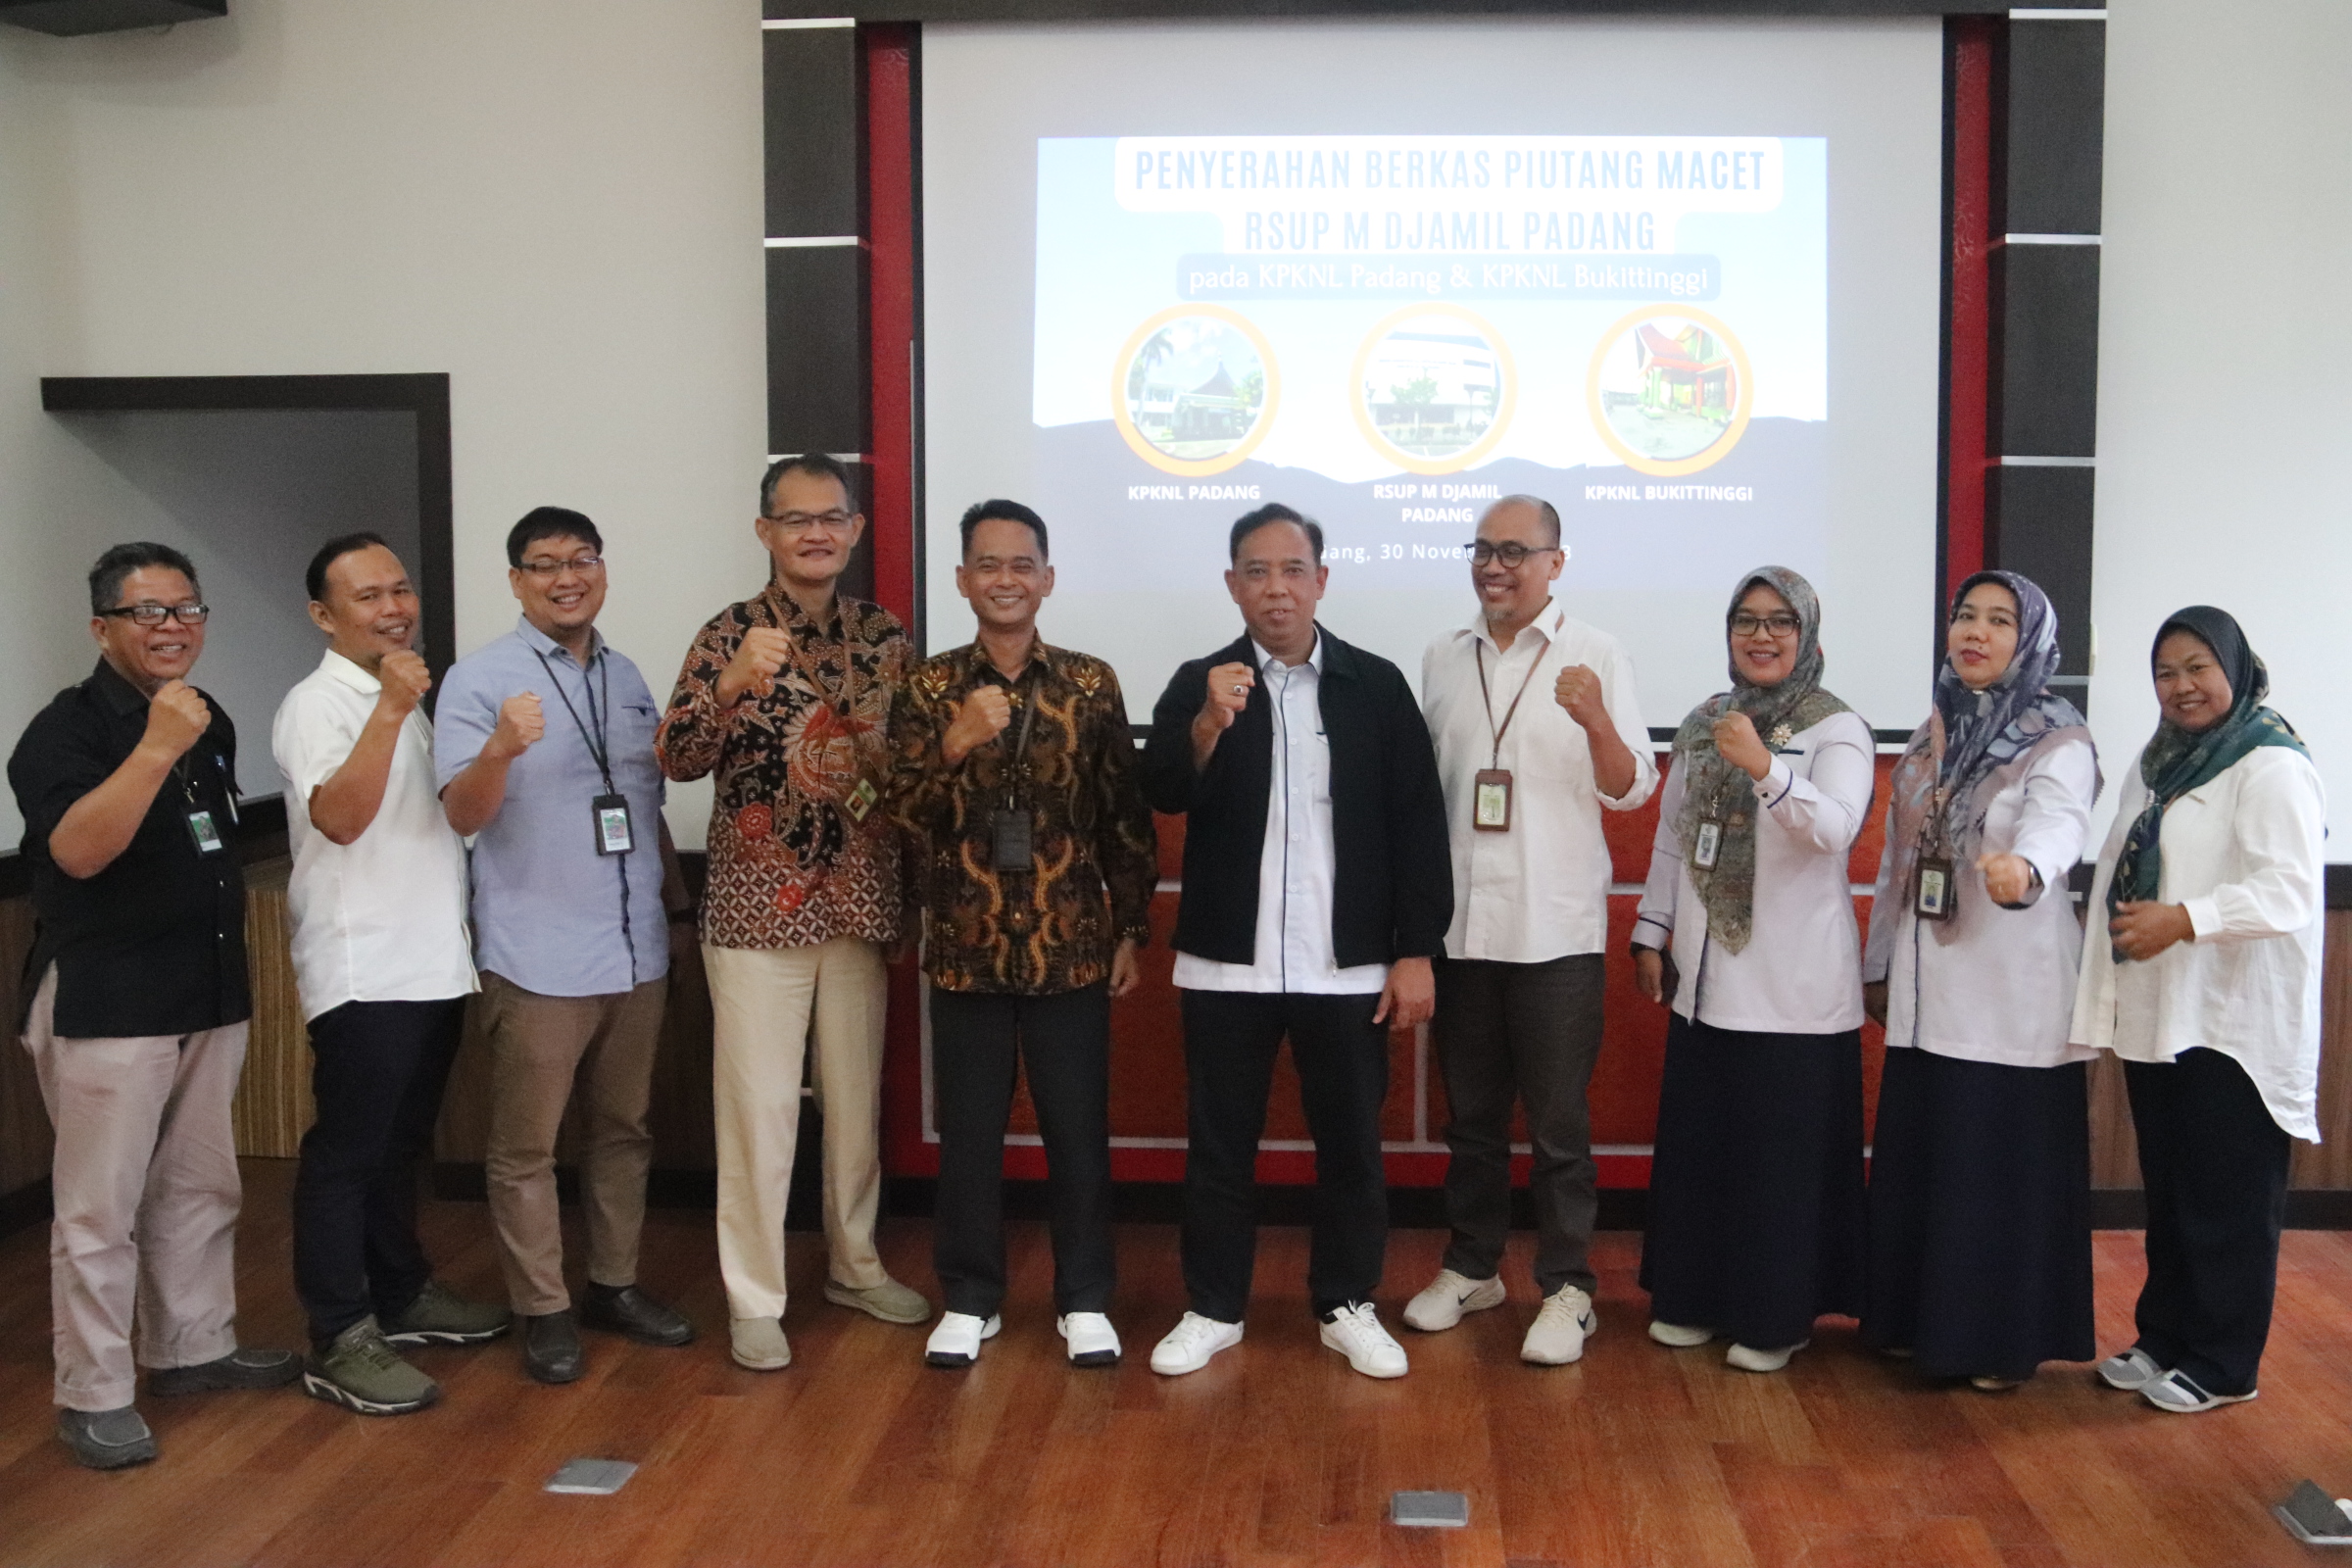 Serah Terima BKPN RSUP Dr. M Djamil Padang KPKNL Padang dan KPKNL Bukittinggi